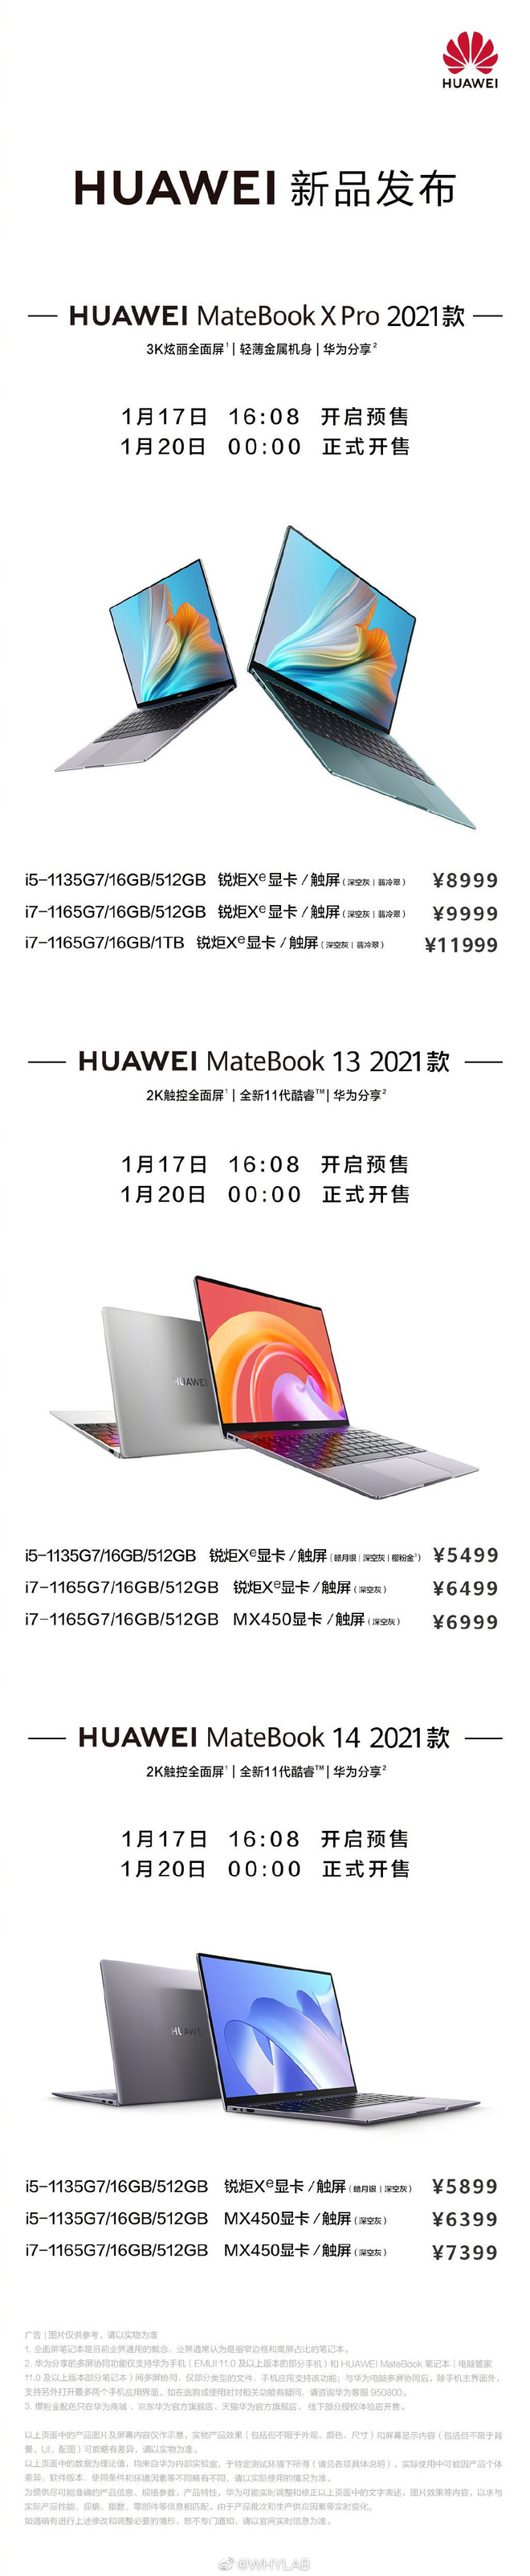 Huawei MateBook X Pro (2021) và MateBook 13/14 (2021) ra mắt: Màn hình cảm ứng, Intel Core thế hệ 11, Nvidia MX450, giá từ 19.6 triệu đồng - Ảnh 10.